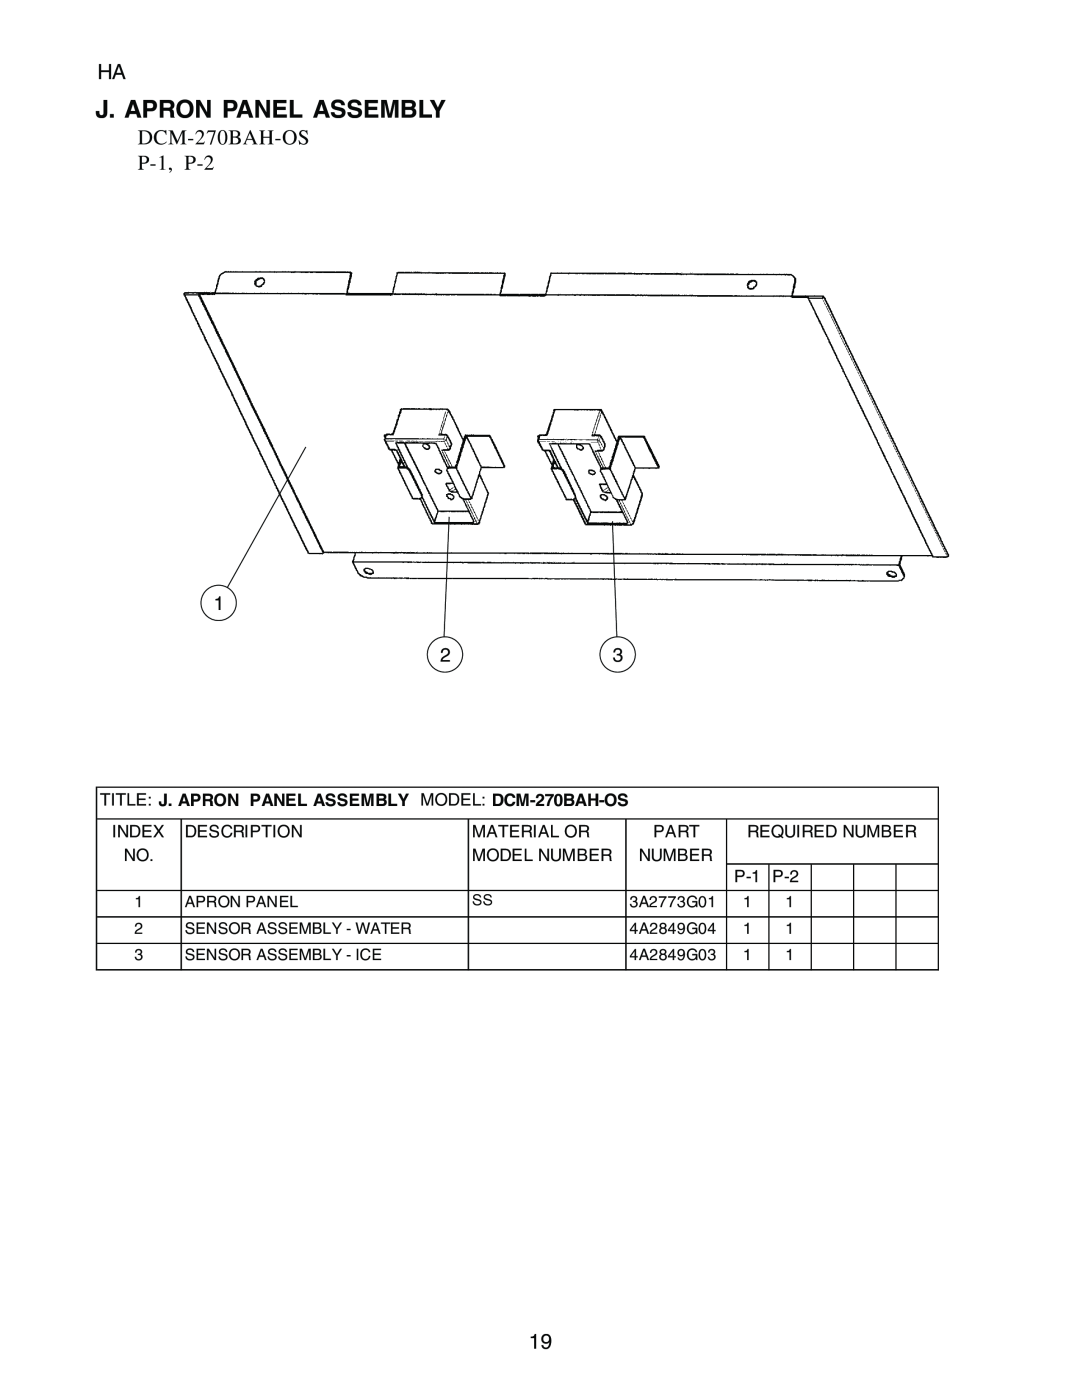 Hoshizaki manual J. Apron Panel Assembly, TITLE J. APRON PANEL ASSEMBLY MODEL DCM-270BAH-OS, DCM-270BAH-OS P-1, P-2 